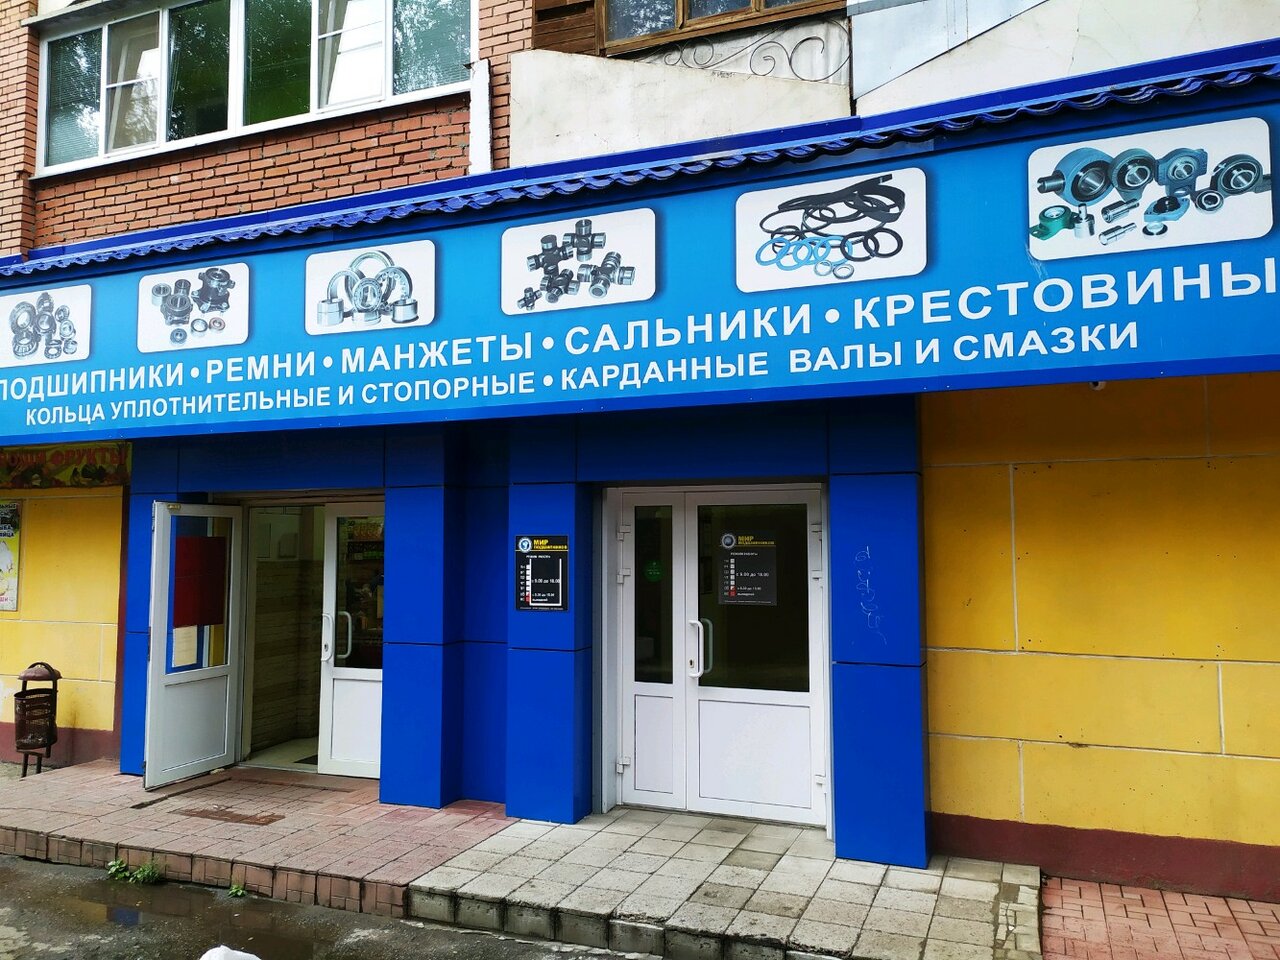 Магазин Мир Подшипников В Челябинске